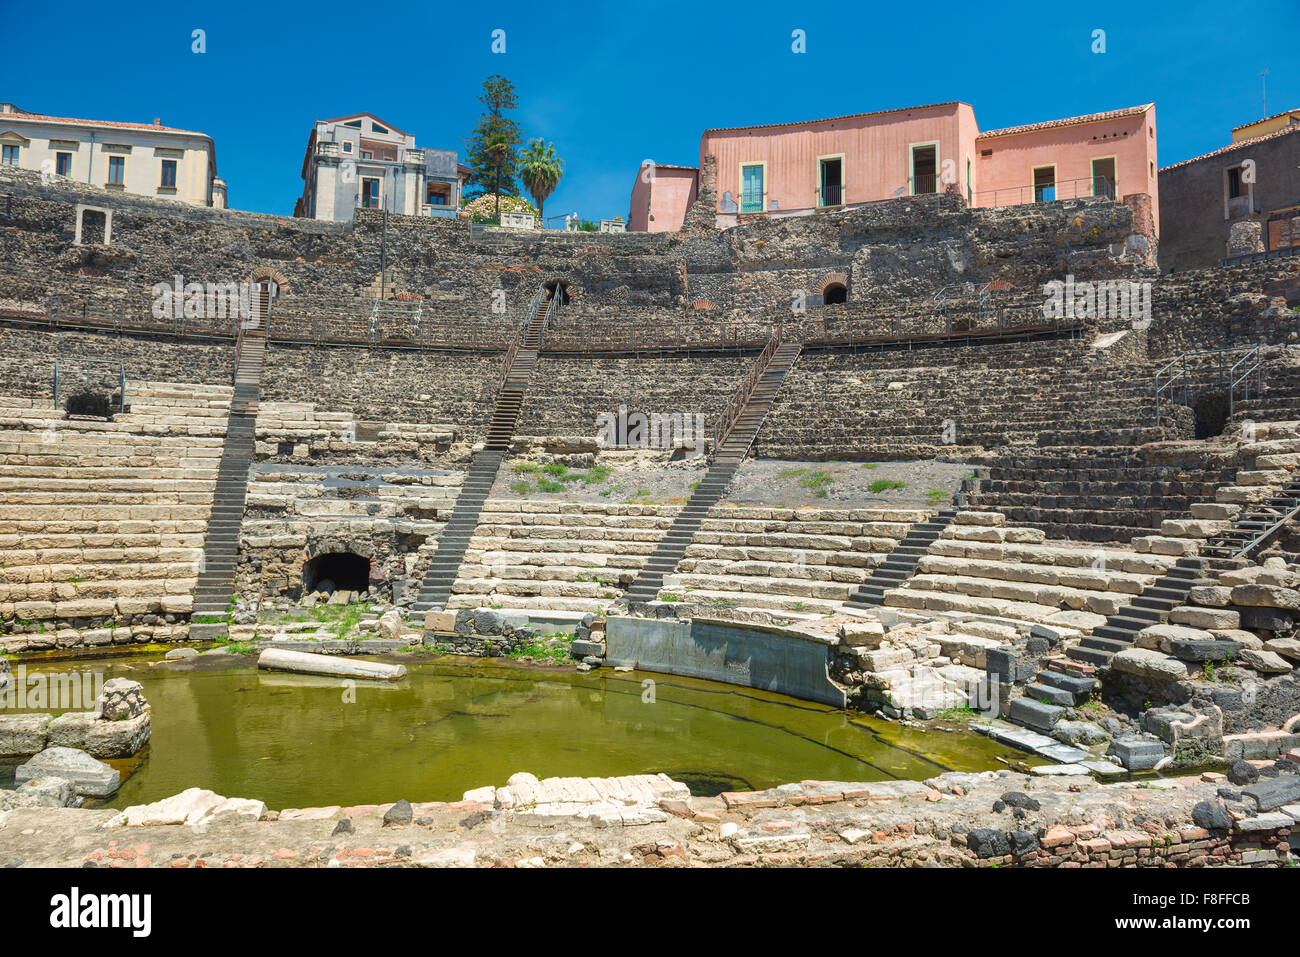 Römisches Theater Catania, Blick auf das Auditorium des Teatro Romano im historischen Zentrum der Stadt Catania, Sizilien. Stockfoto